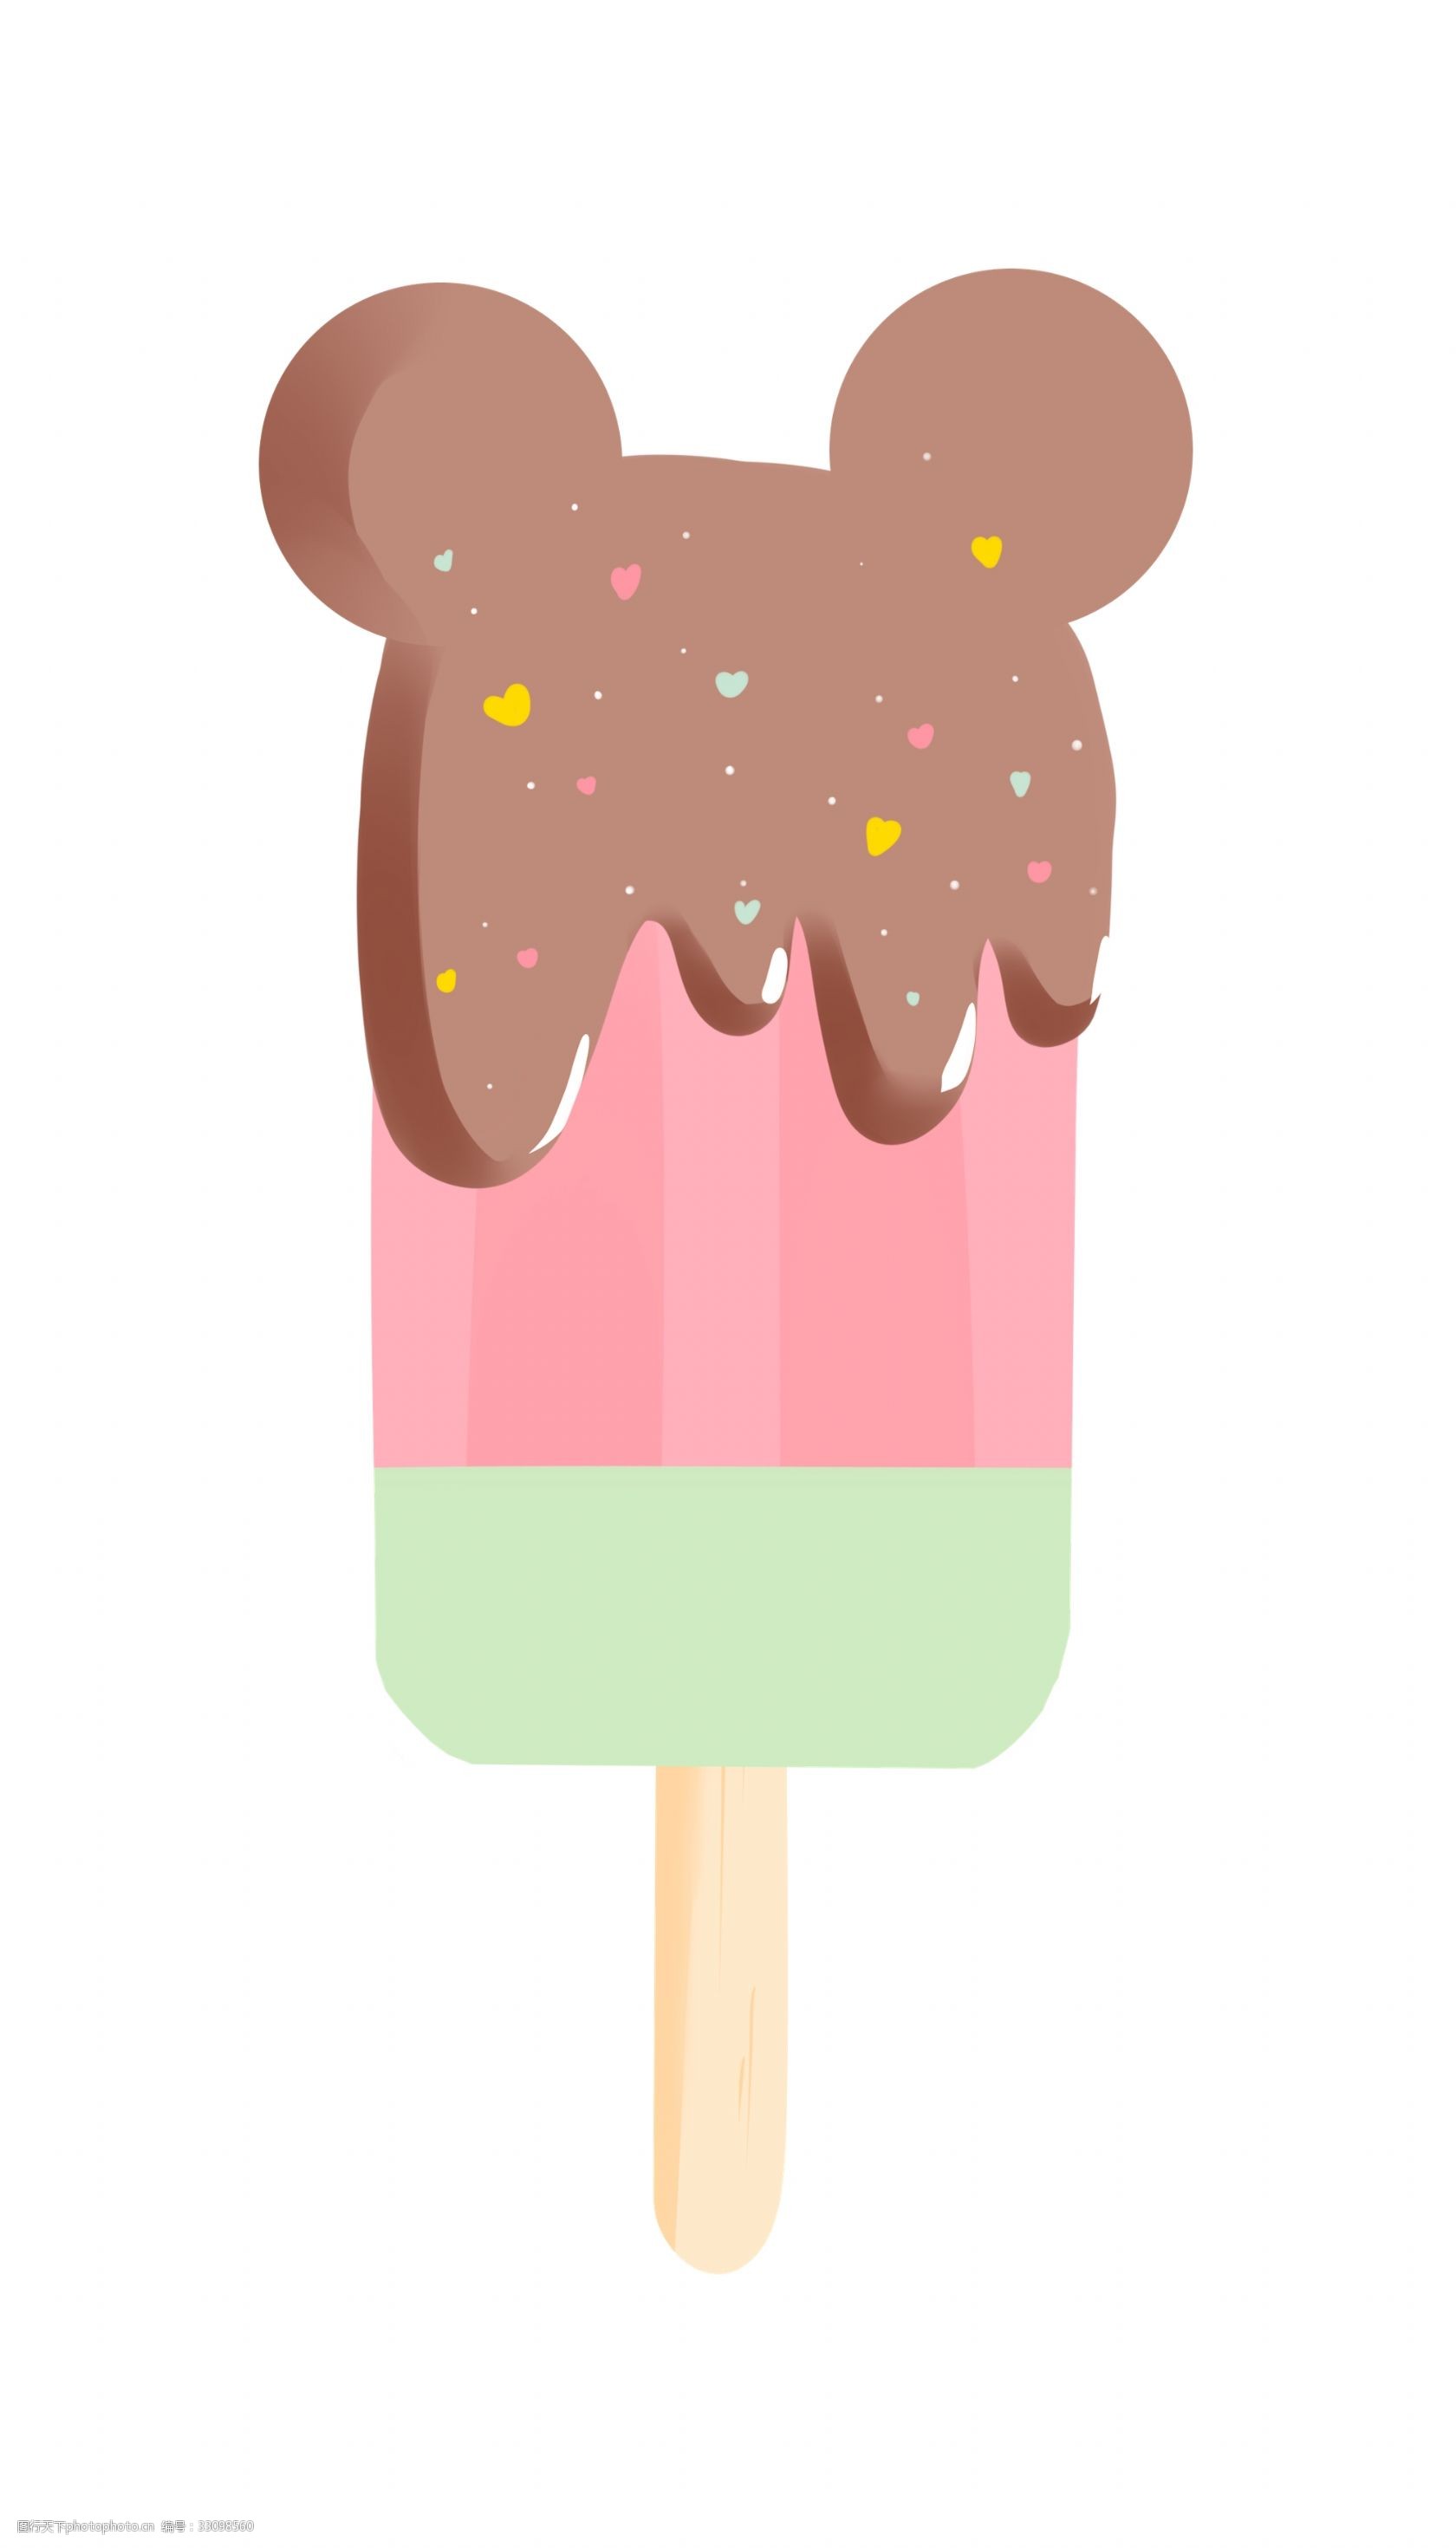 关键词:可爱水果冰棒 冰棒 冰淇淋 雪糕